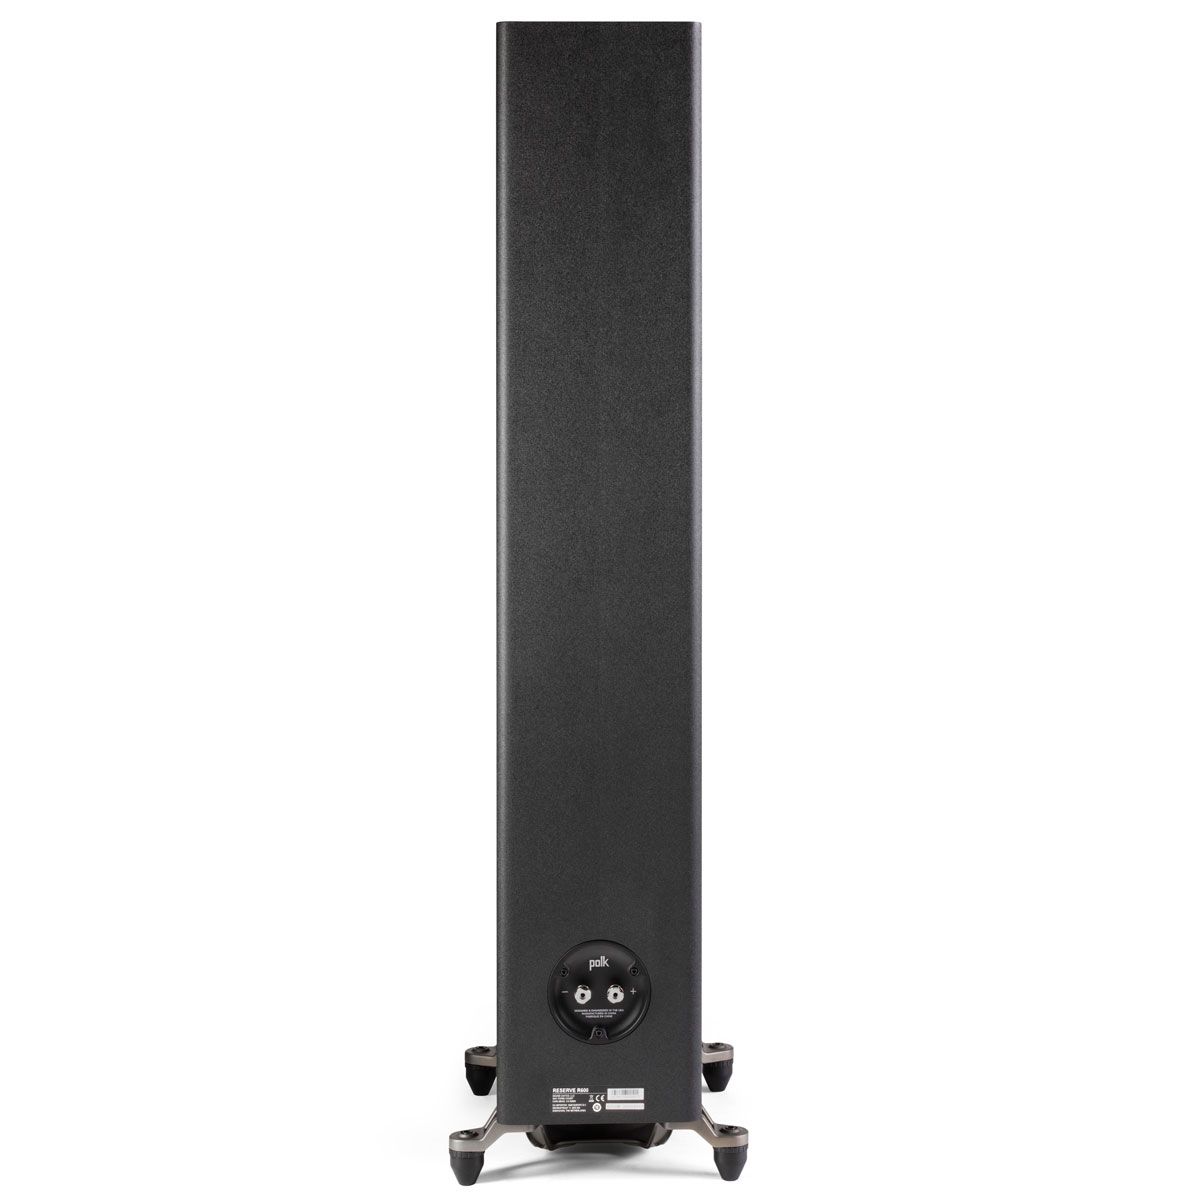 Polk R600 Floorstanding Speaker, Black, back